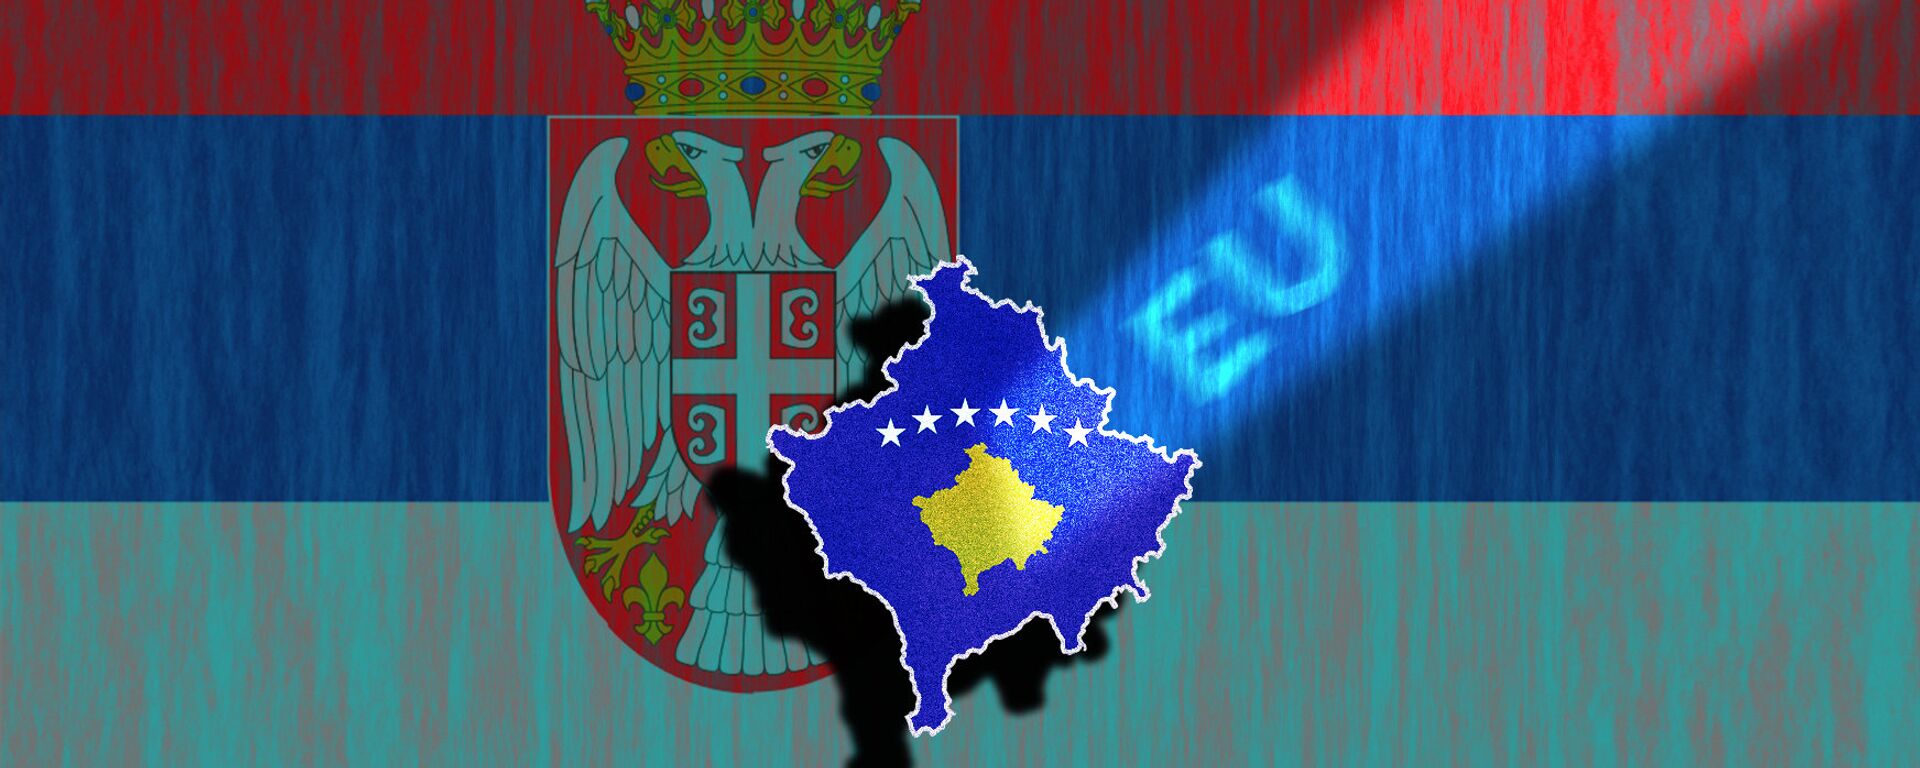 Srbija, Kosovo, EU - ilustracija - Sputnik Srbija, 1920, 26.05.2021